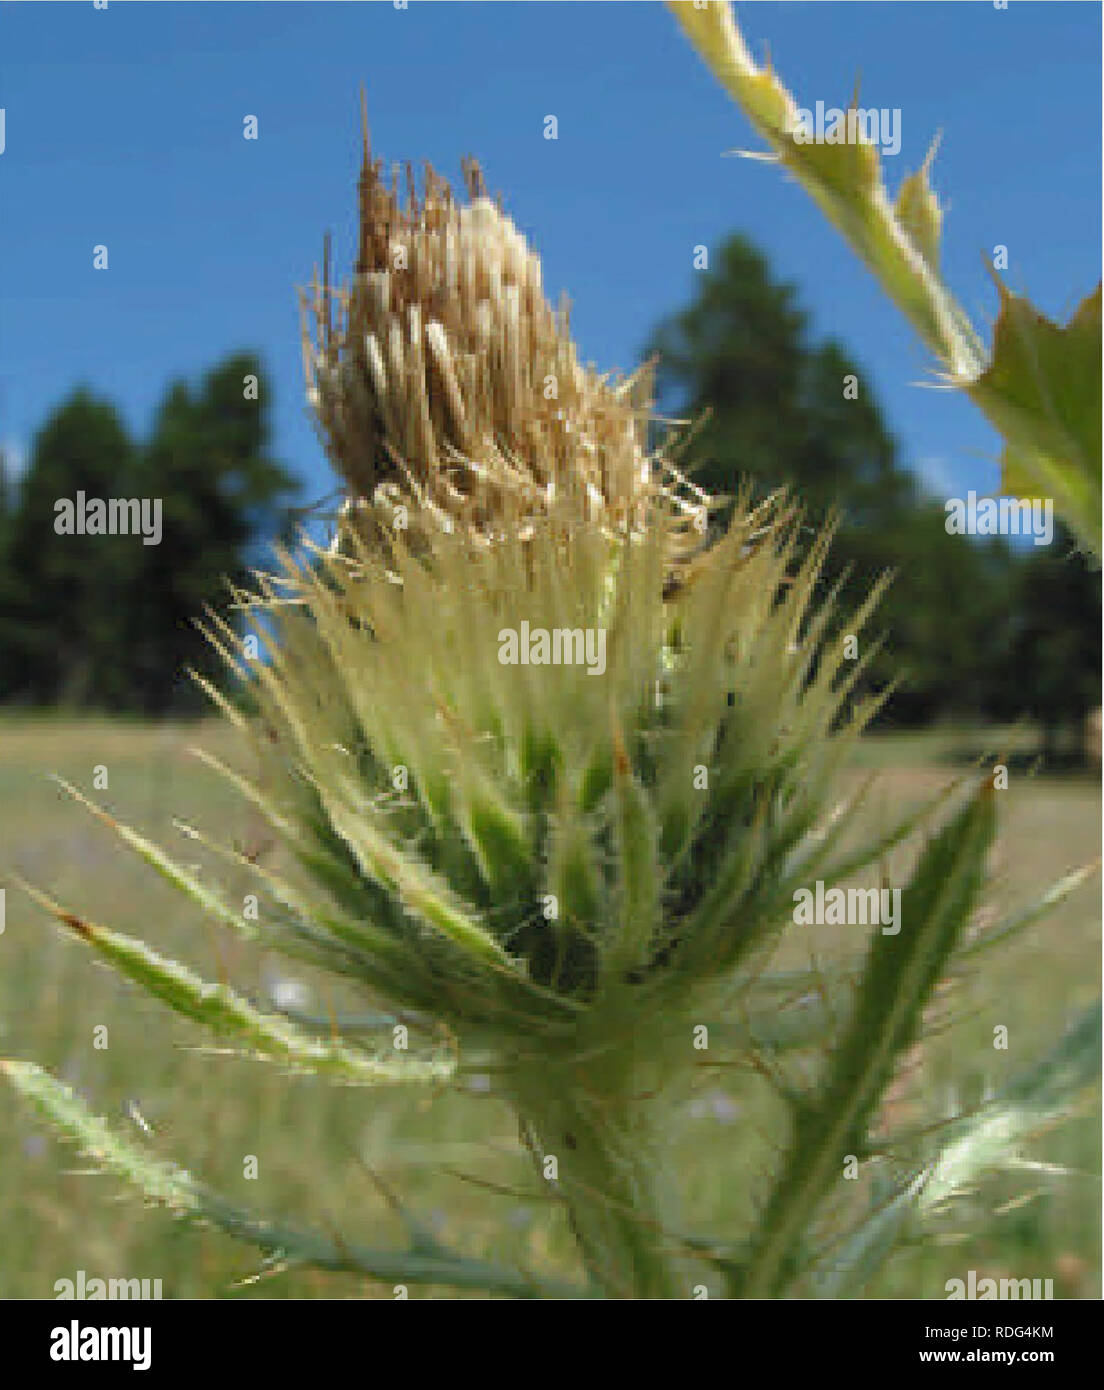 . L'évaluation de l'état à l'échelle de l'aire de cirsium longistylum (long-appelée thistle) . Cirsium Cirsium ; longistylum ; Long-appelée chardon ; plantes endémiques ; plantes rares. Feuilles linéaires-lancéolées, pas decurrent de base, Longueur environ 10 fois la largeur, à 15 cm de long, 1,5 cm de large, lobées à 1/3 de la largeur, ou moins, les feuilles supérieures plus petits lobes ovés, essentiellement ensemble, souvent irrégulières avec de nombreuses épines marginales fine de 5 mm de long. Feuilles gris vert, légèrement au-dessus de l'arachnoïde, blanc, villous ci-dessous. Les têtes de fleurs 3 cm de haut, 2,5 cm de large. Disposition des chefs variable et non exclusivement dans un cluster, terminal b fermer Banque D'Images